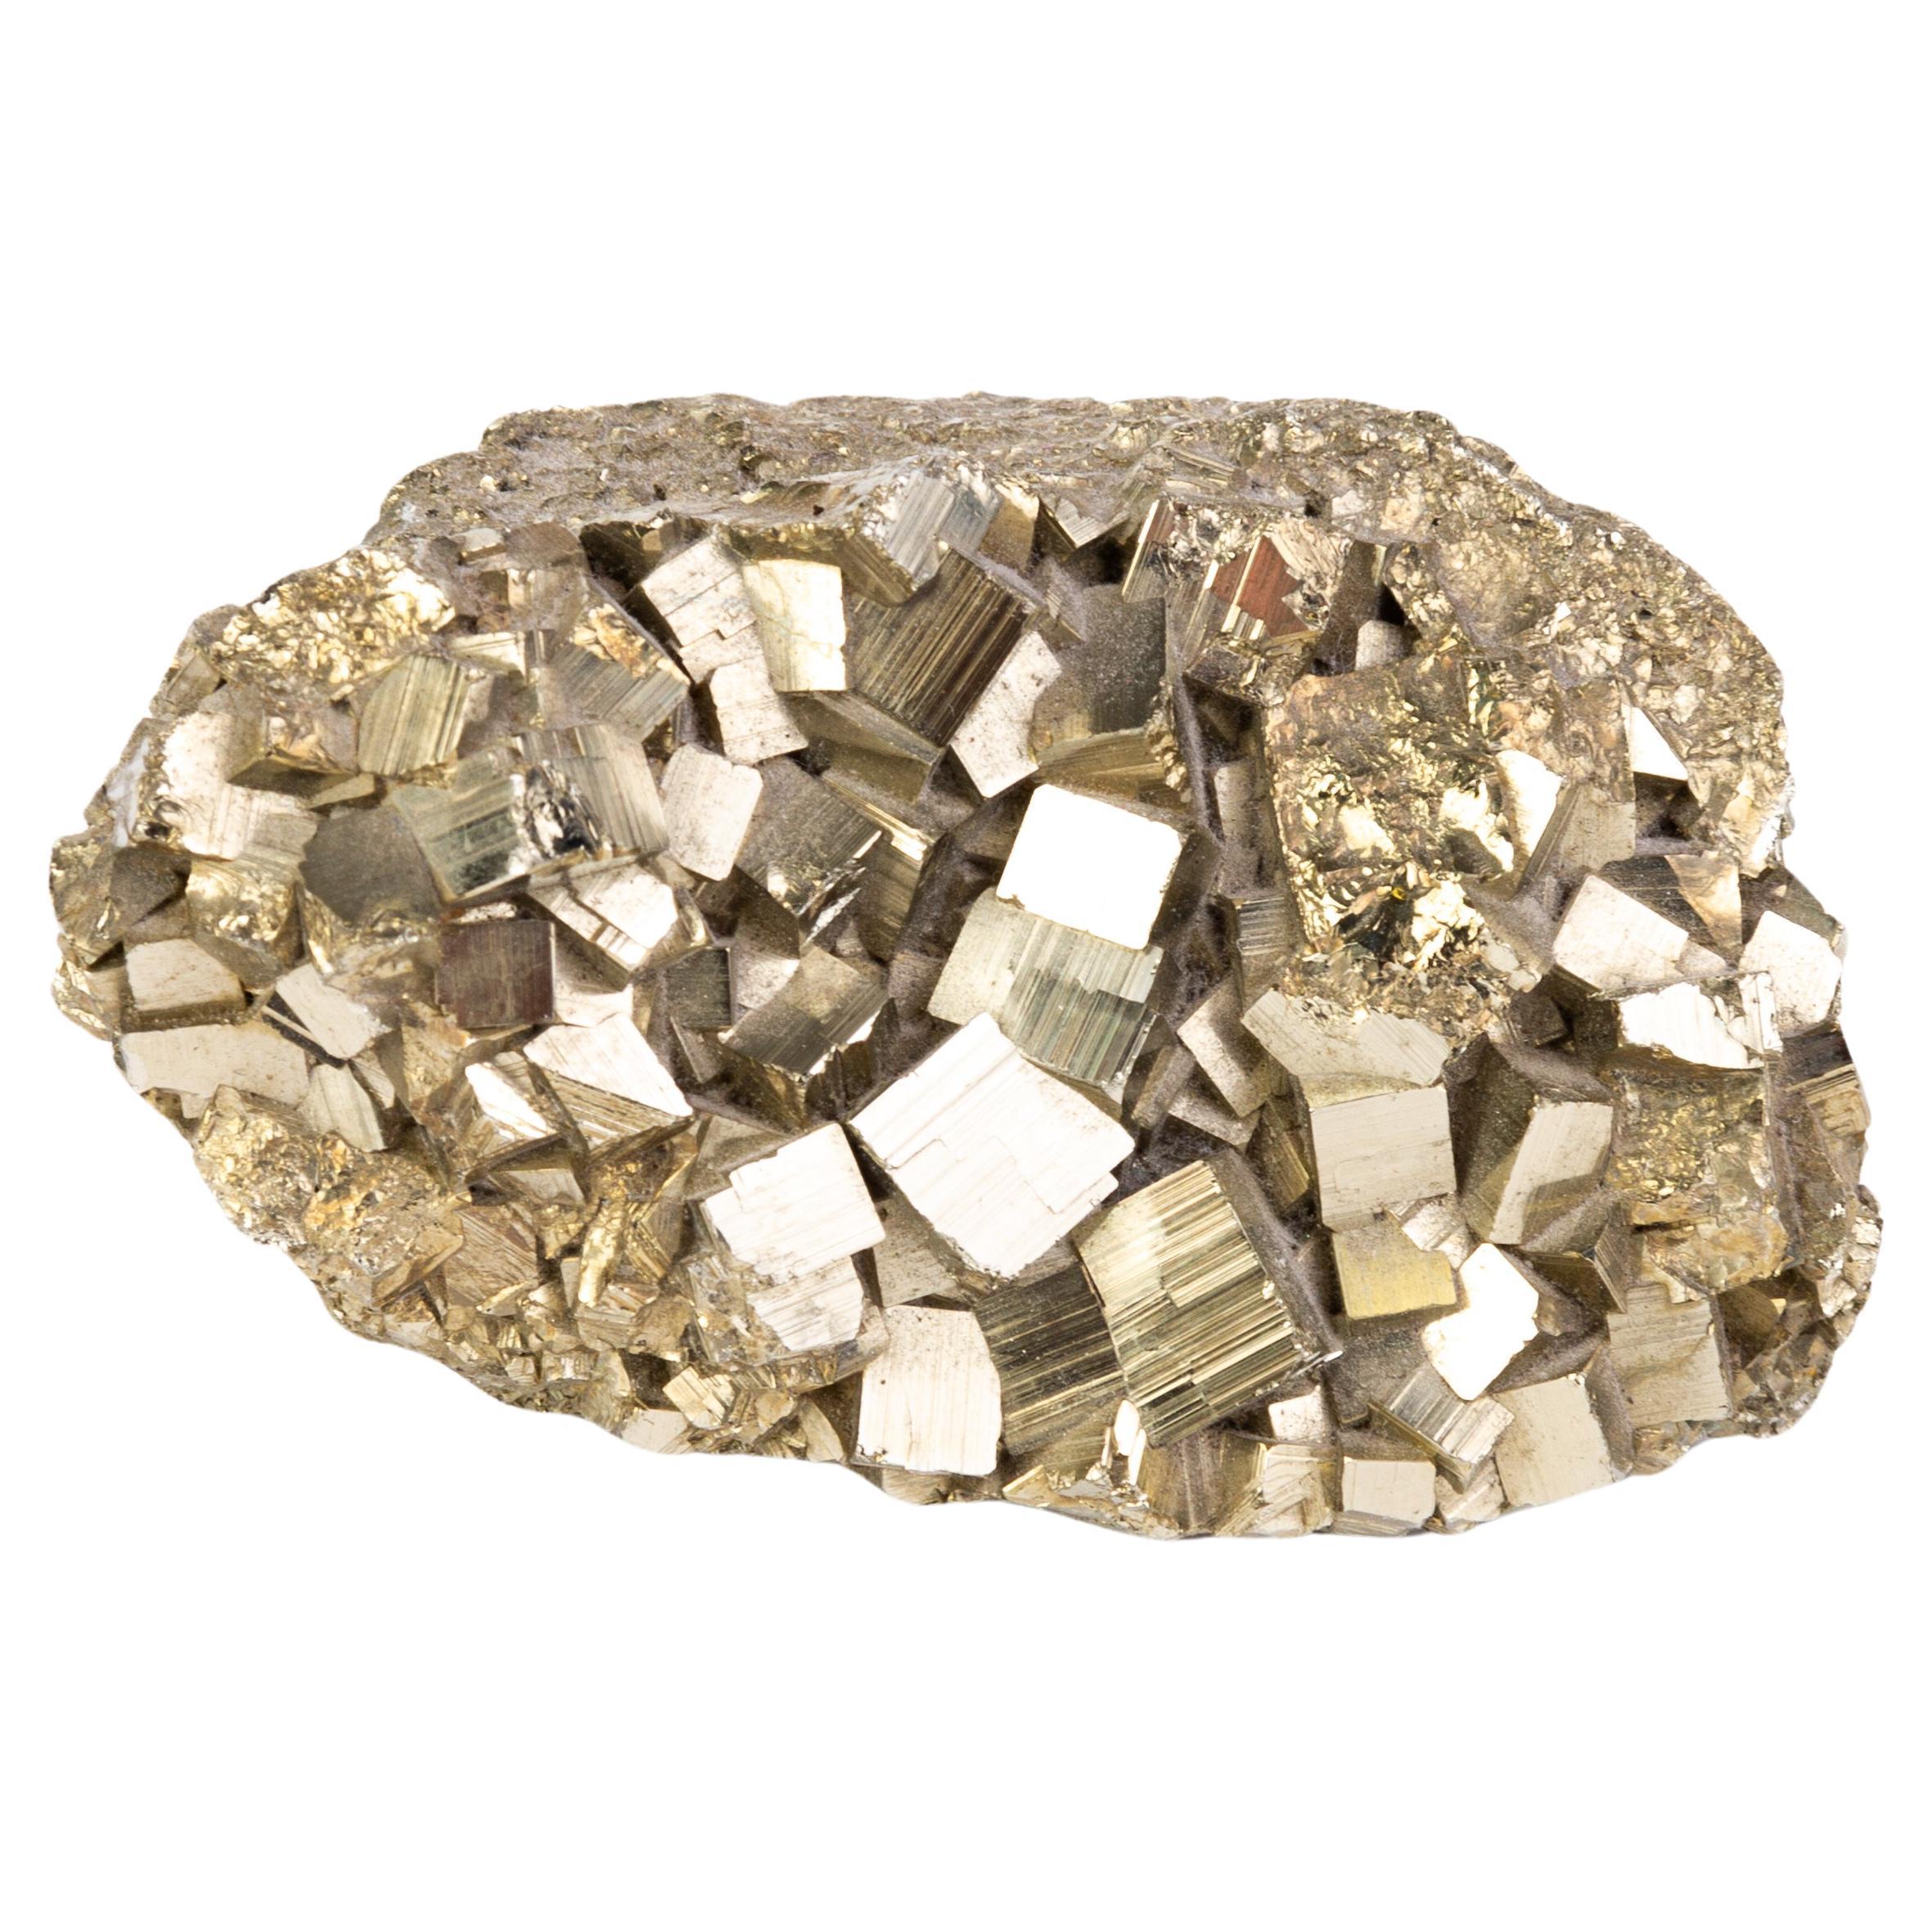 Mineralexemplar aus Pyrrhotitstein 